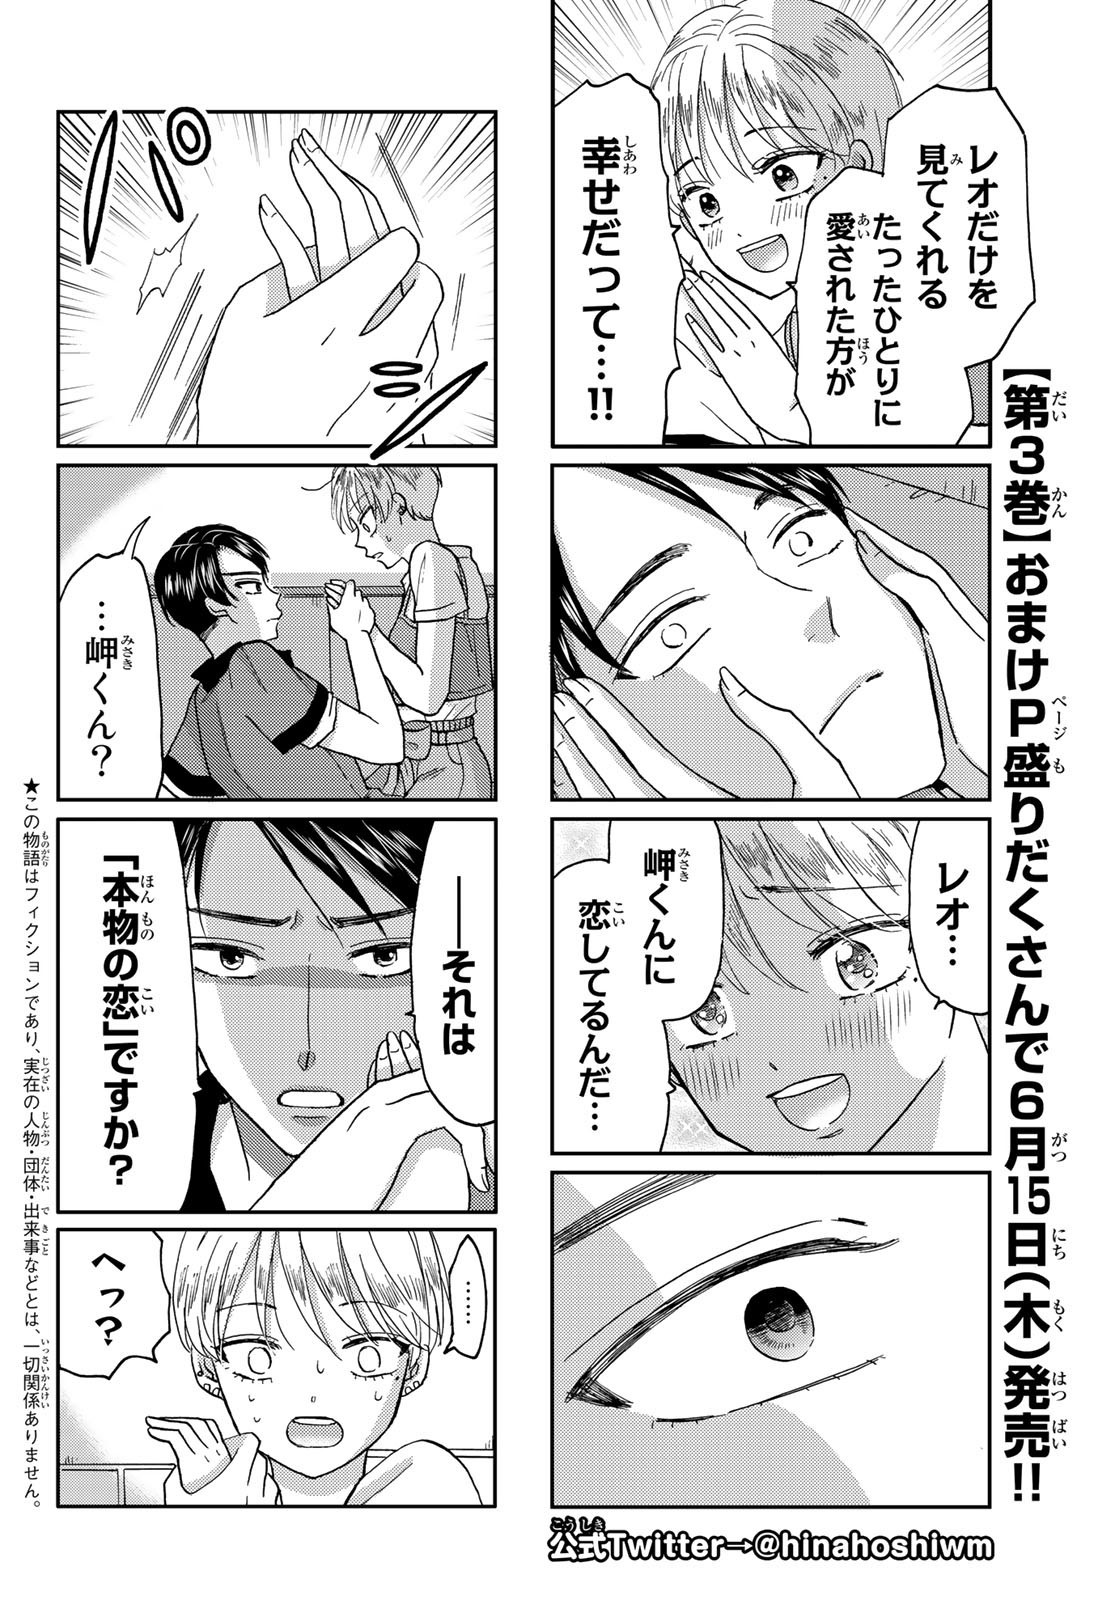 Hinata-san, Hoshino desu. - Chapter 041 - Page 2